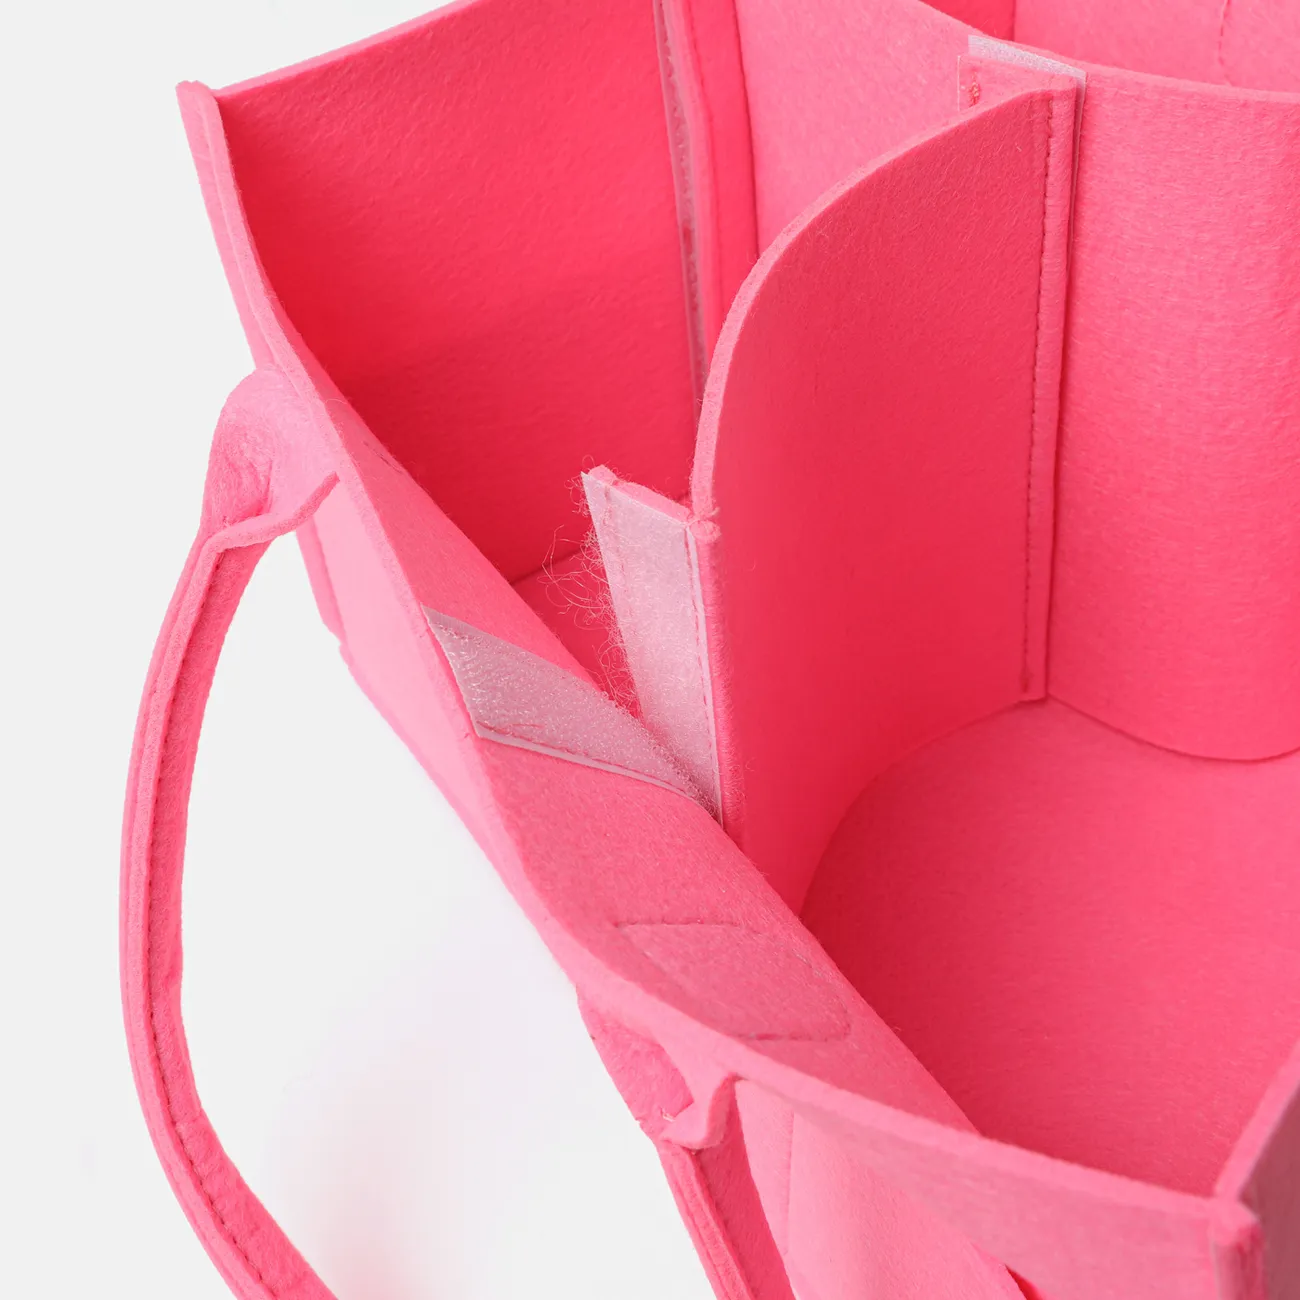 Bolsa de pañales plegable de gran capacidad de almacenamiento de tela para bebé, carrito de pañales de gran tamaño Rosado big image 1